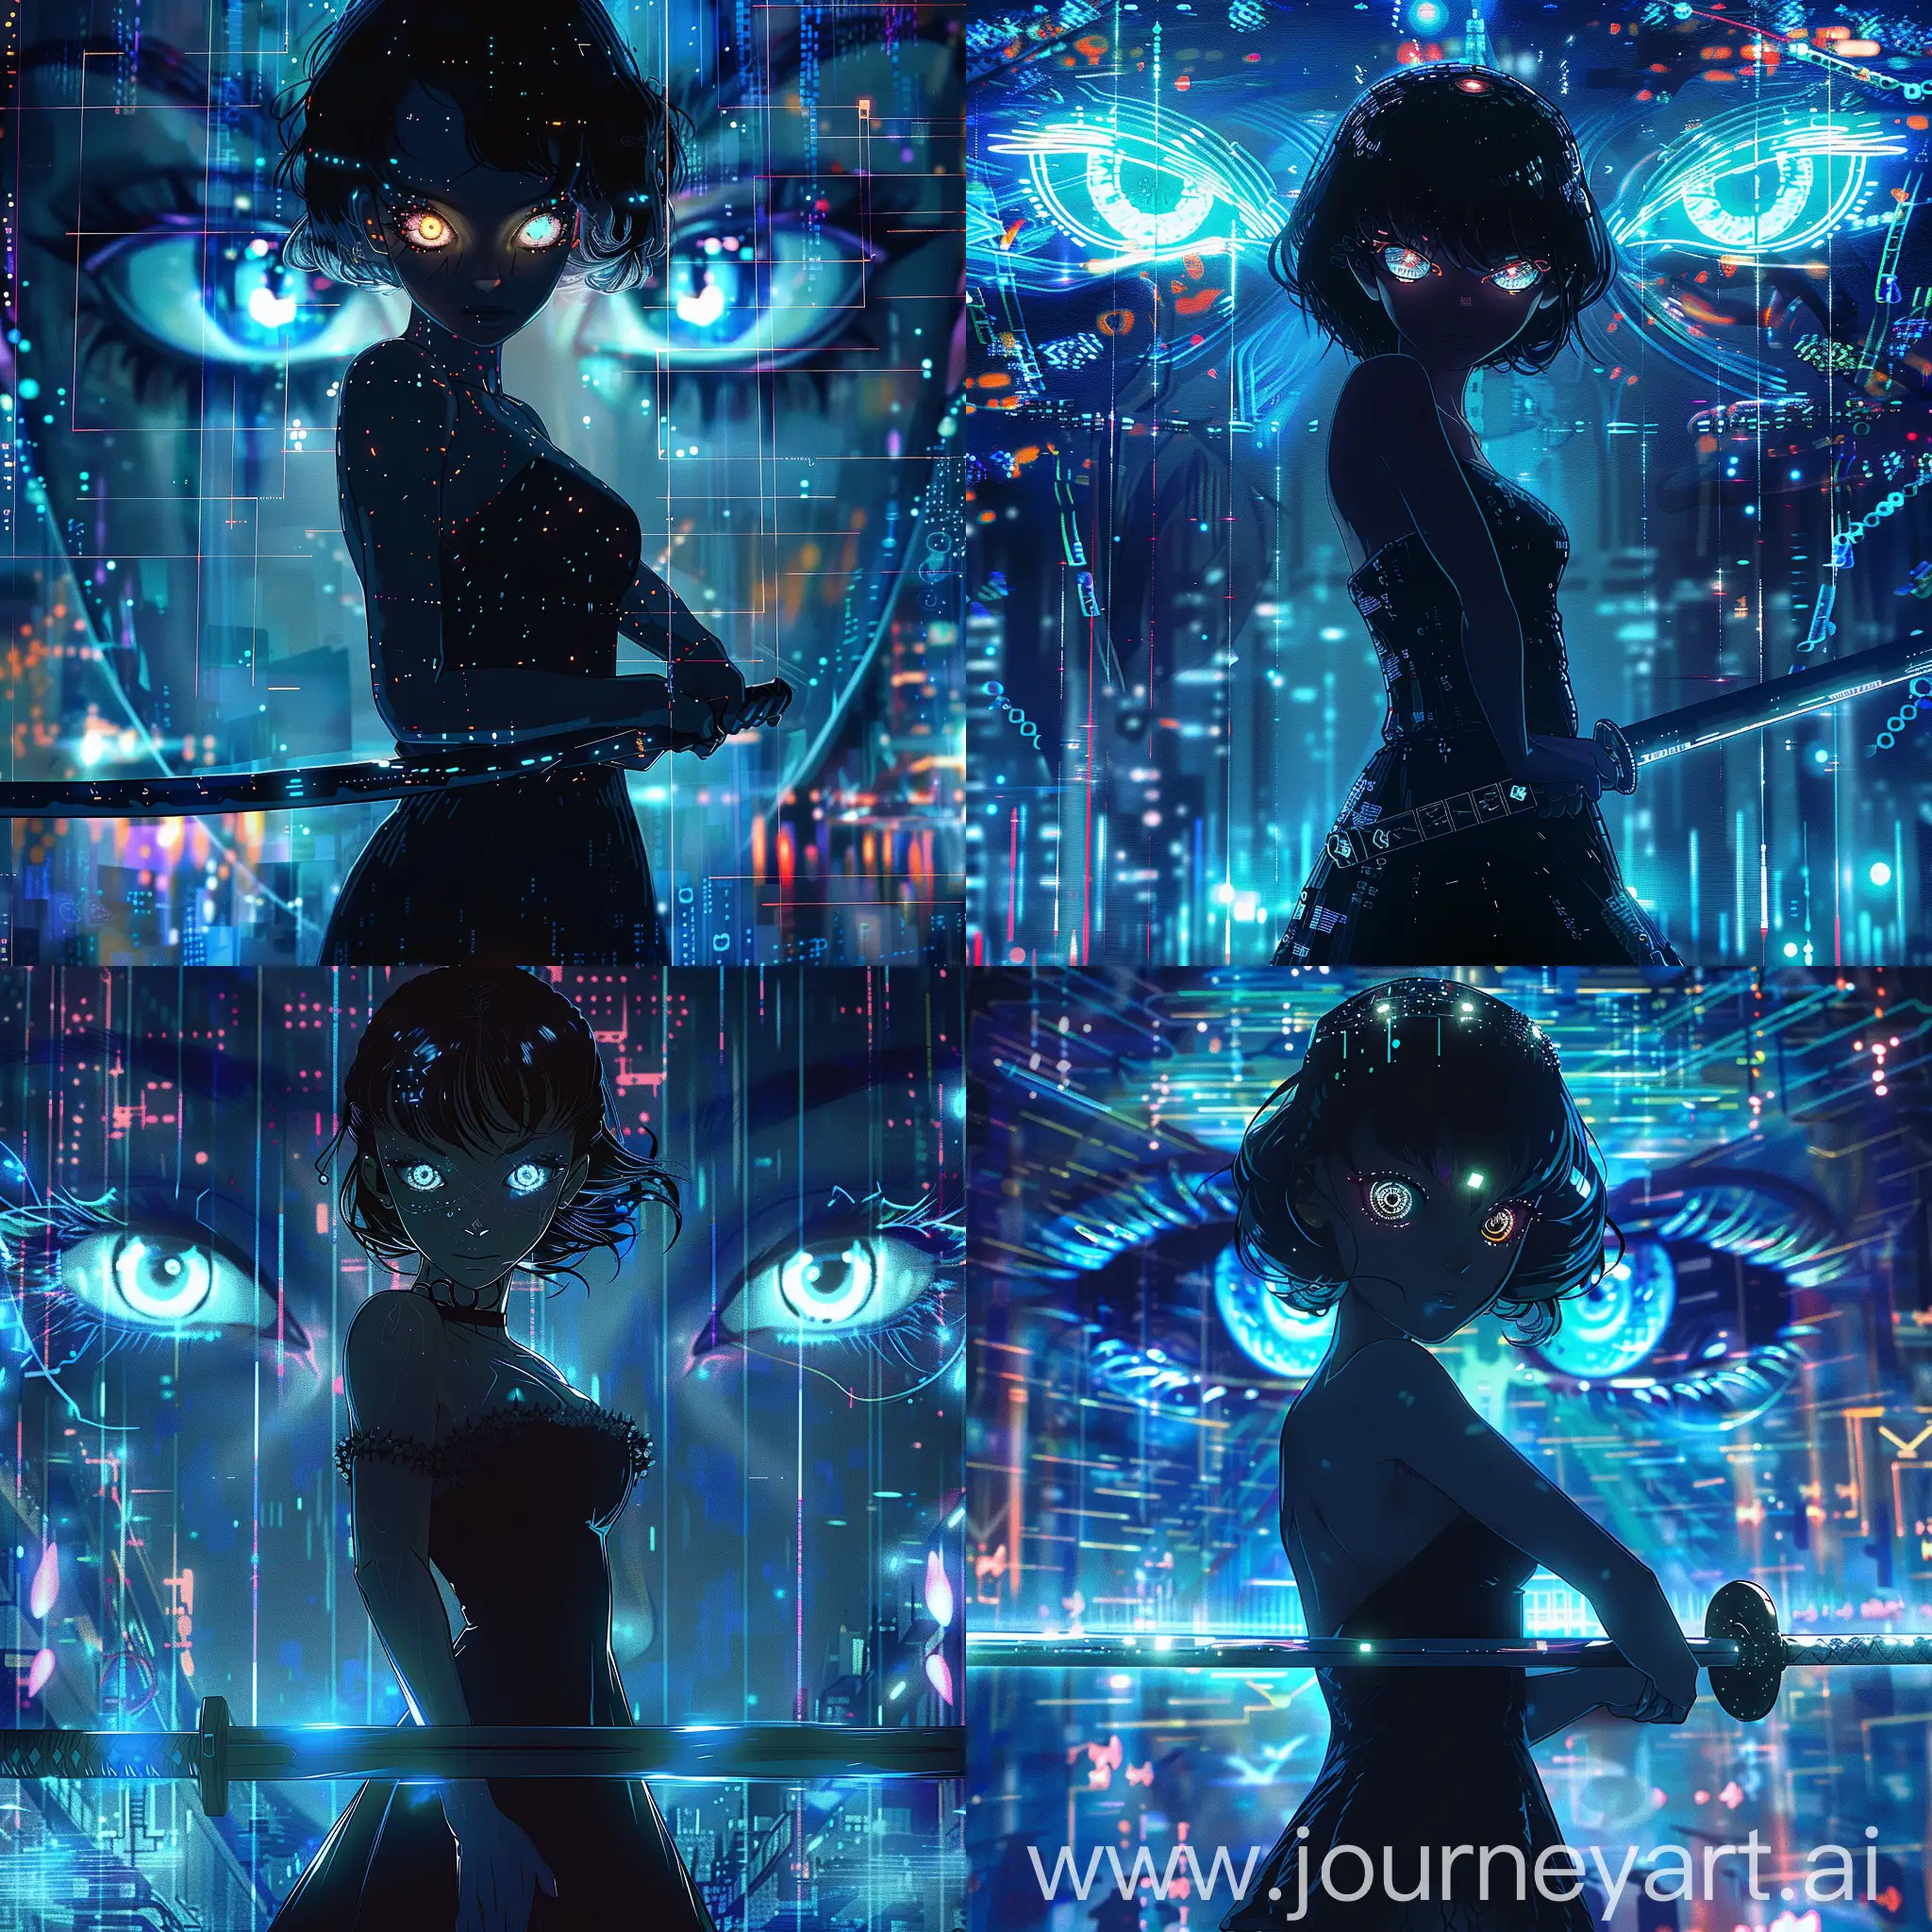 https://i.postimg.cc/hjNRHsXH/1708871343088-1.png holography, astration, девушка со светящимися глазами с мечом в руках стоит на фоне цифрового фона, девушка одета в черное платье